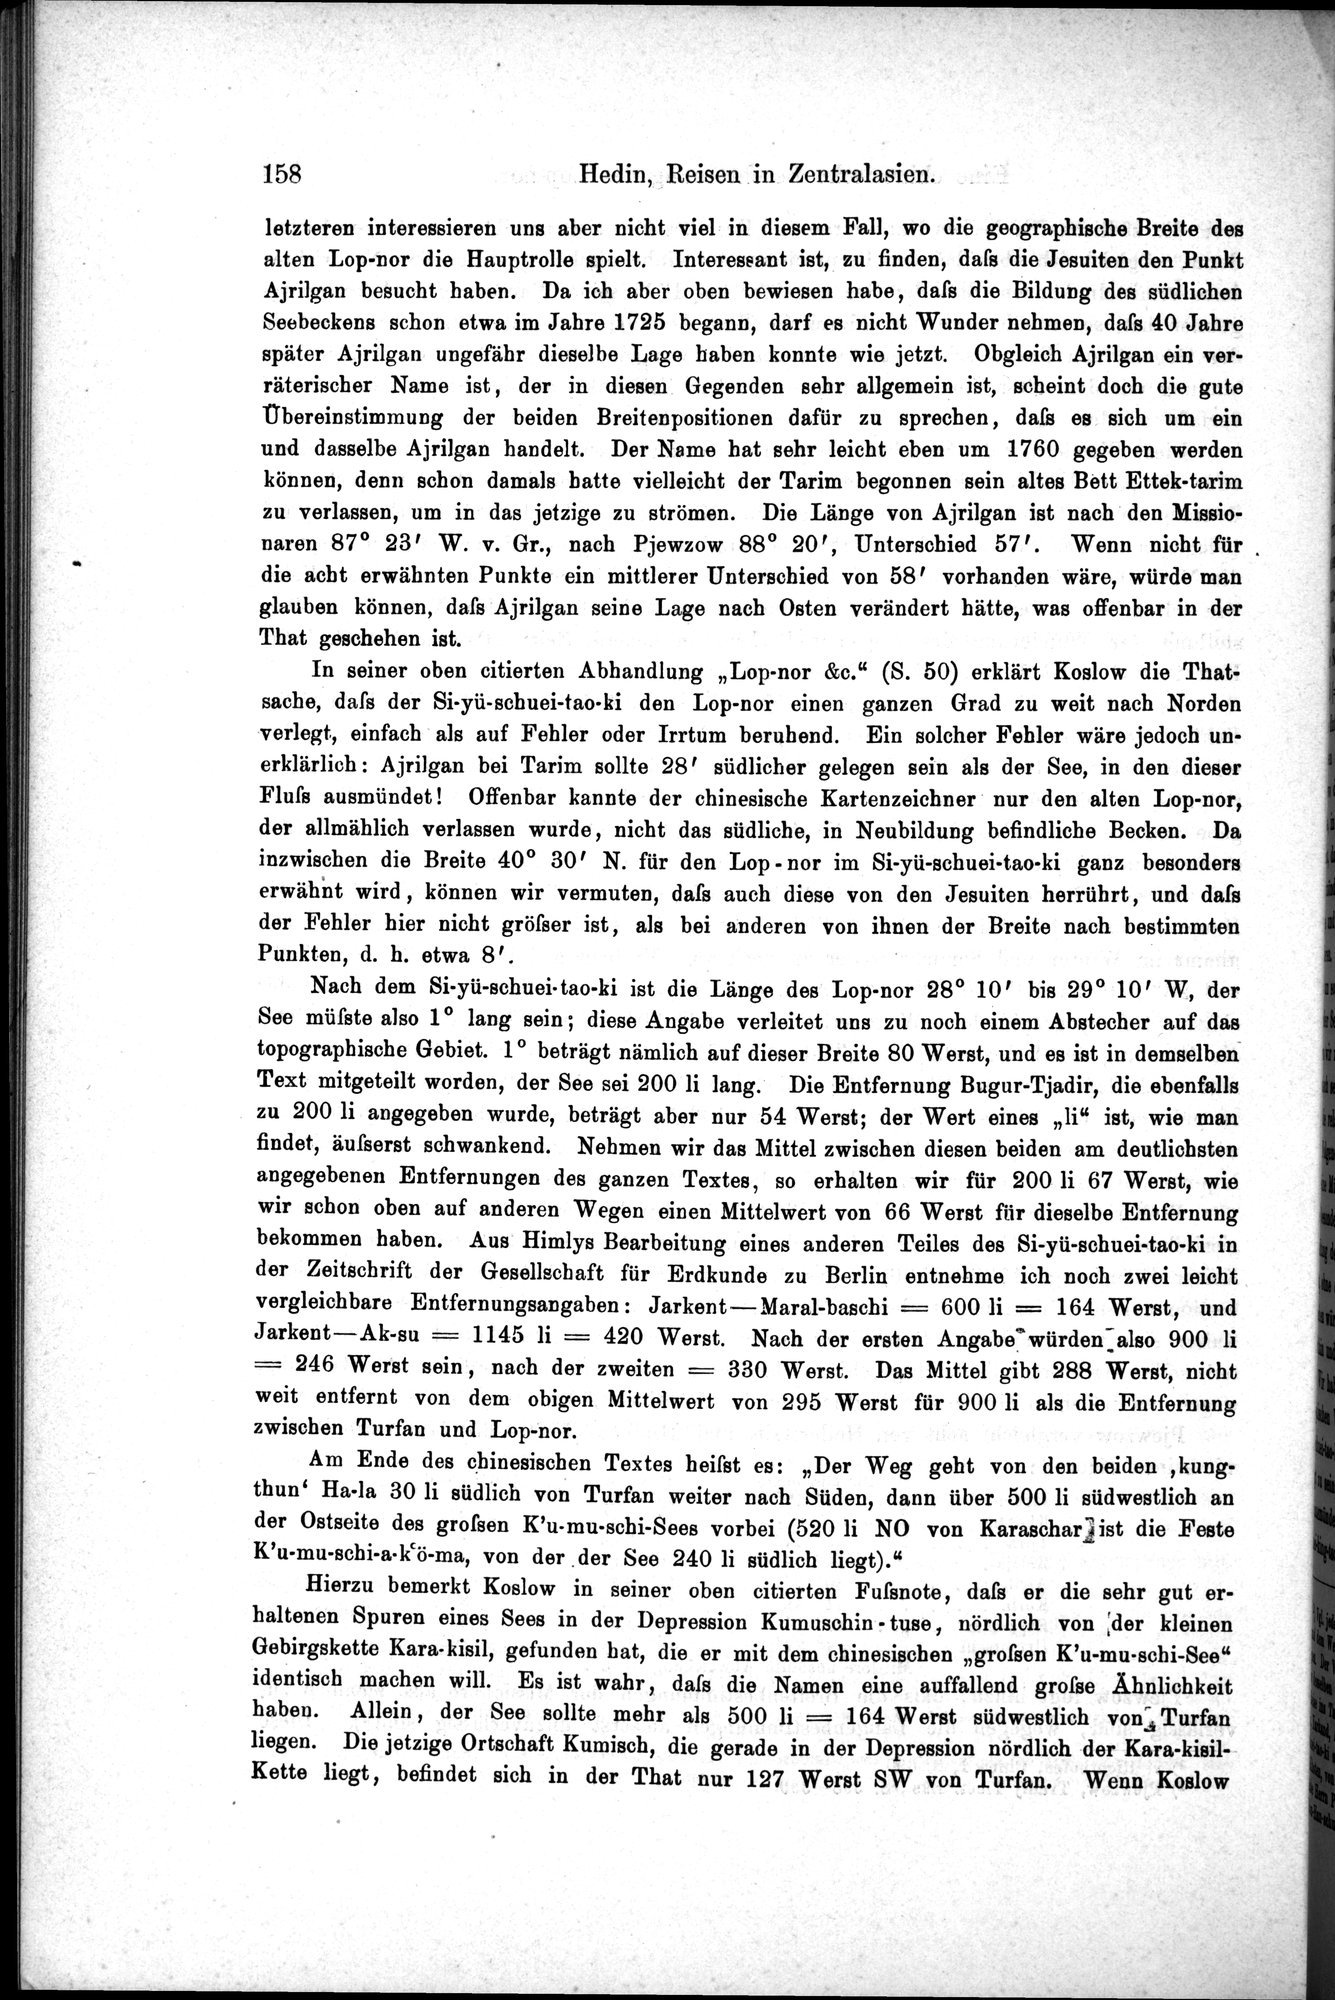 Die Geographische-Wissenschaftlichen Ergebnisse meiner Reisen in Zentralasien, 1894-1897 : vol.1 / Page 170 (Grayscale High Resolution Image)